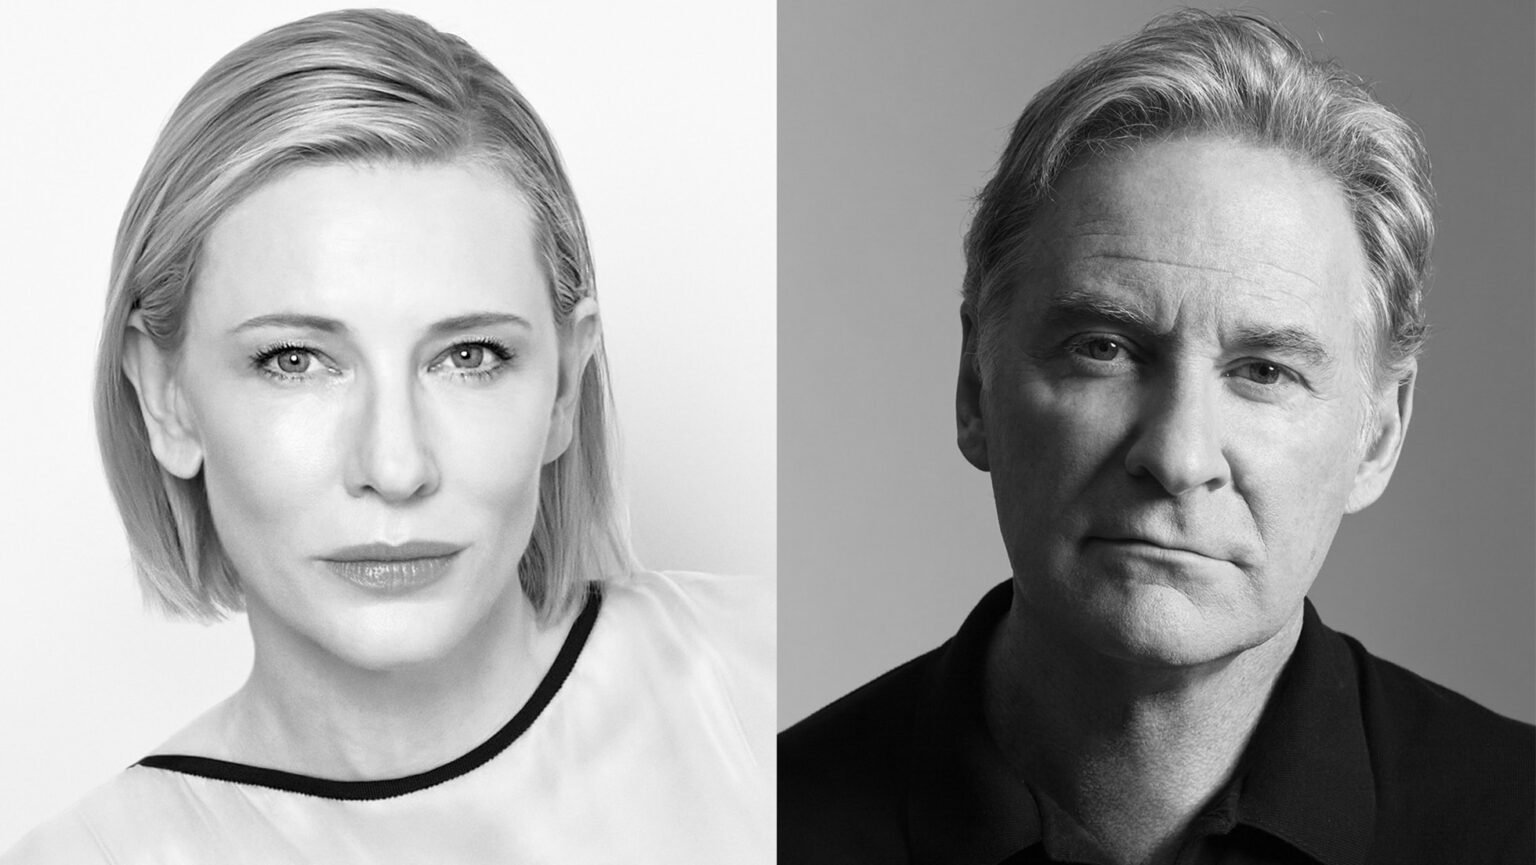 Alfonso Cuarón dirigirá la serie de suspenso “Disclaimer” protagonizada por Cate Blanchett y Kevin Kline para Apple TV +